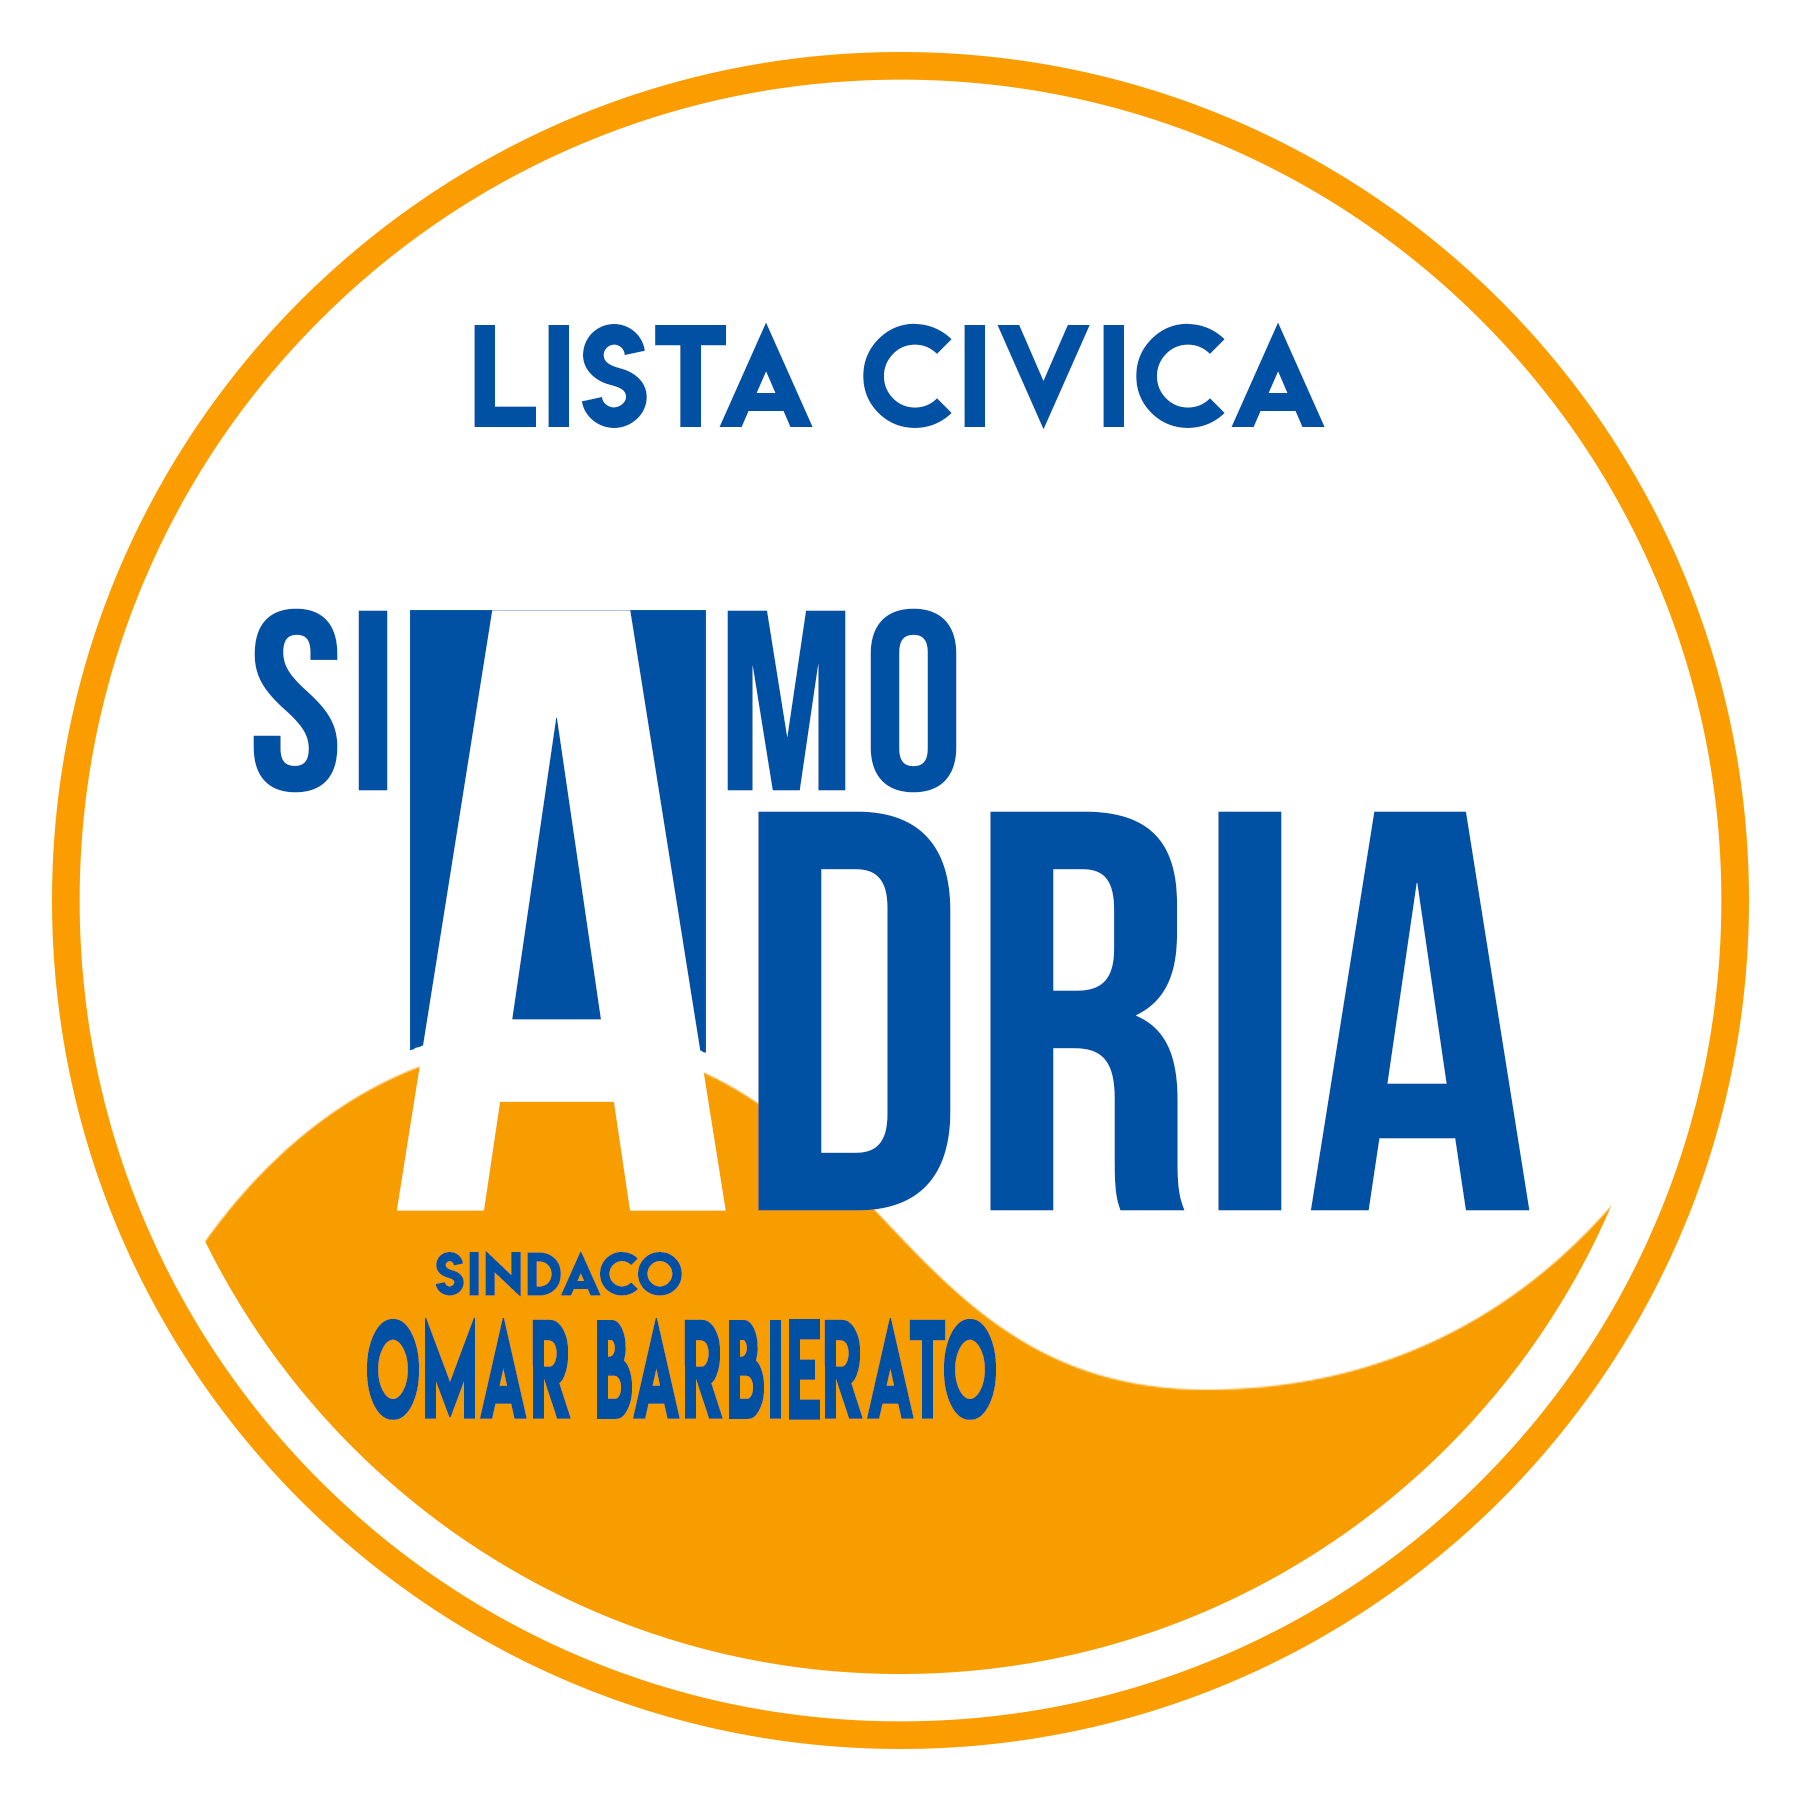    Lista Civica SiAmoAdria